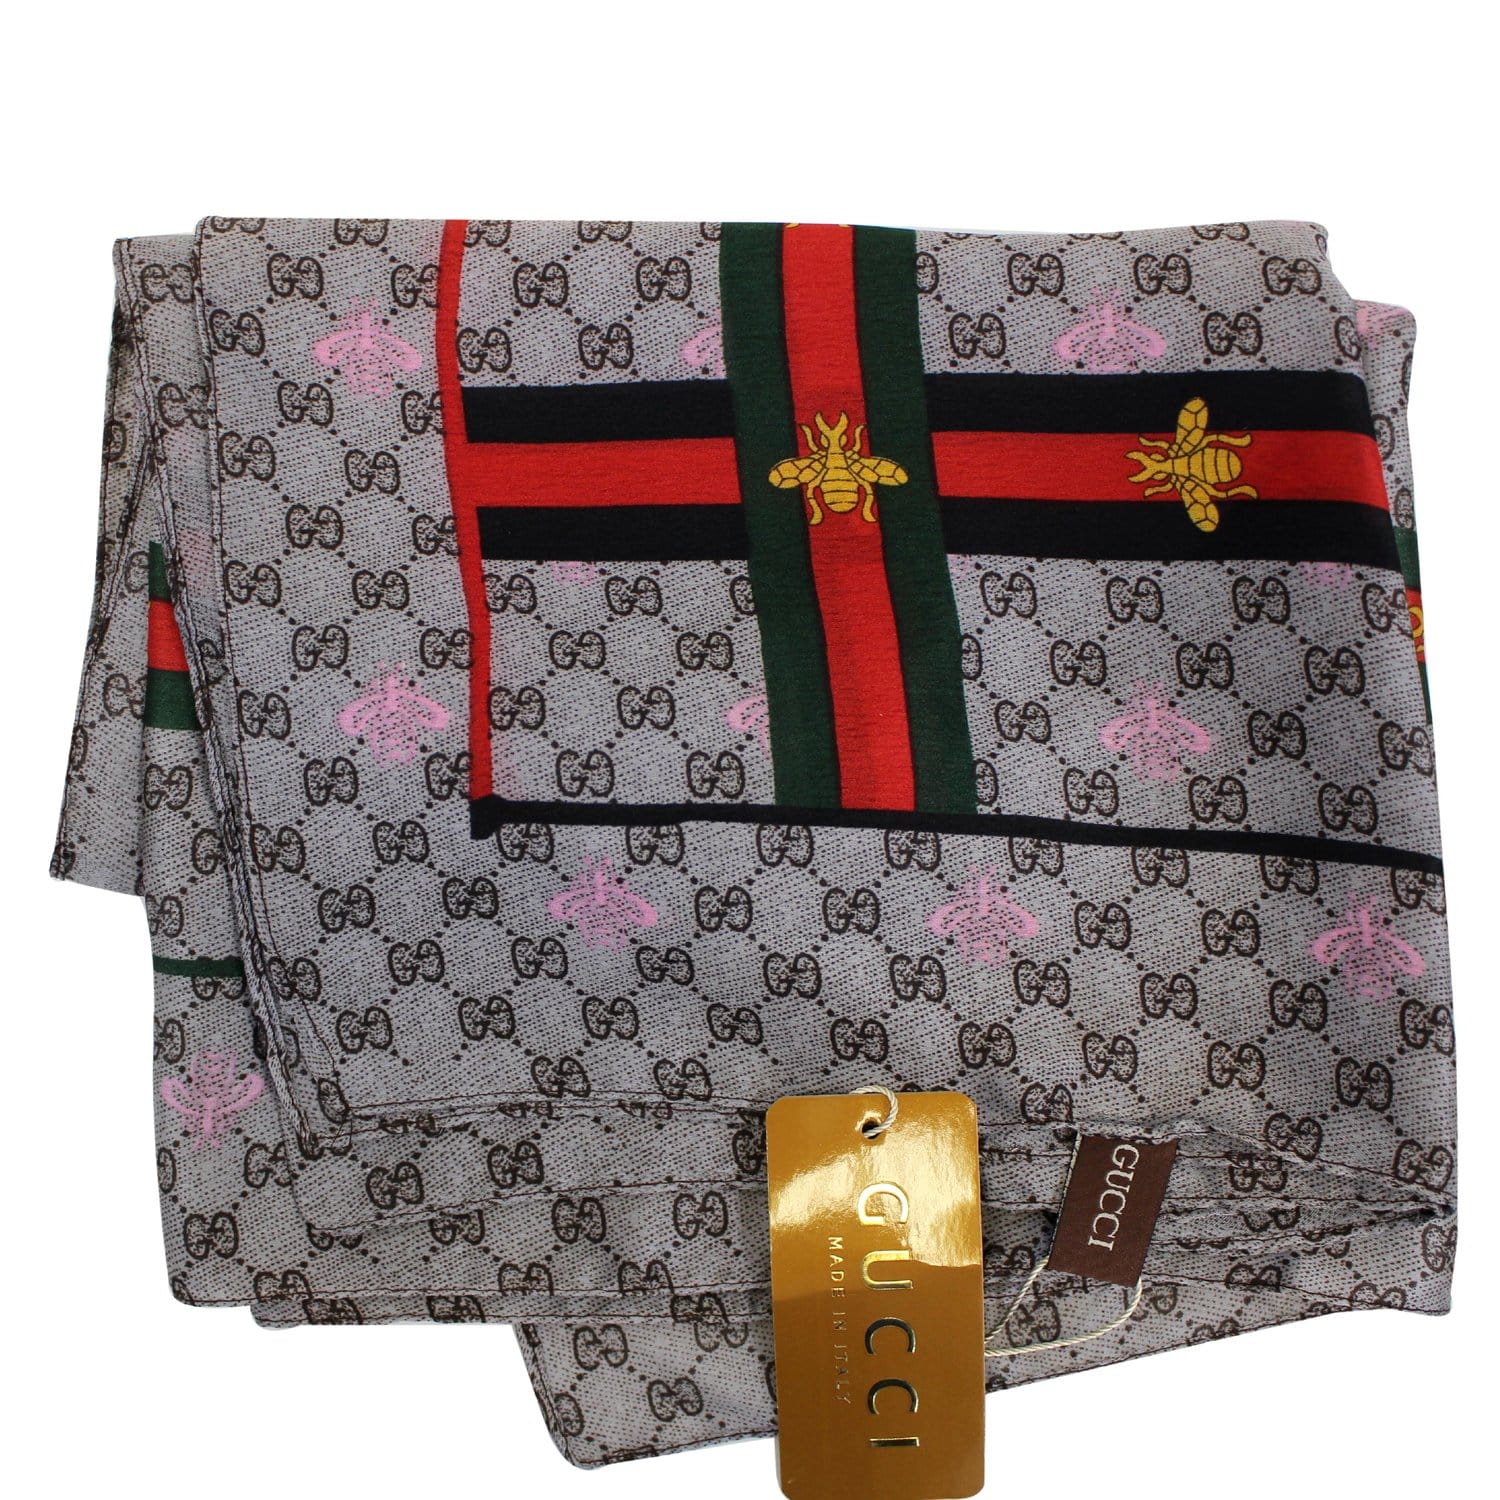 Pre-owned Gucci Positano Scarf Tote in Beige Canvas | Bags, Black gucci  purse, Gucci tote bag